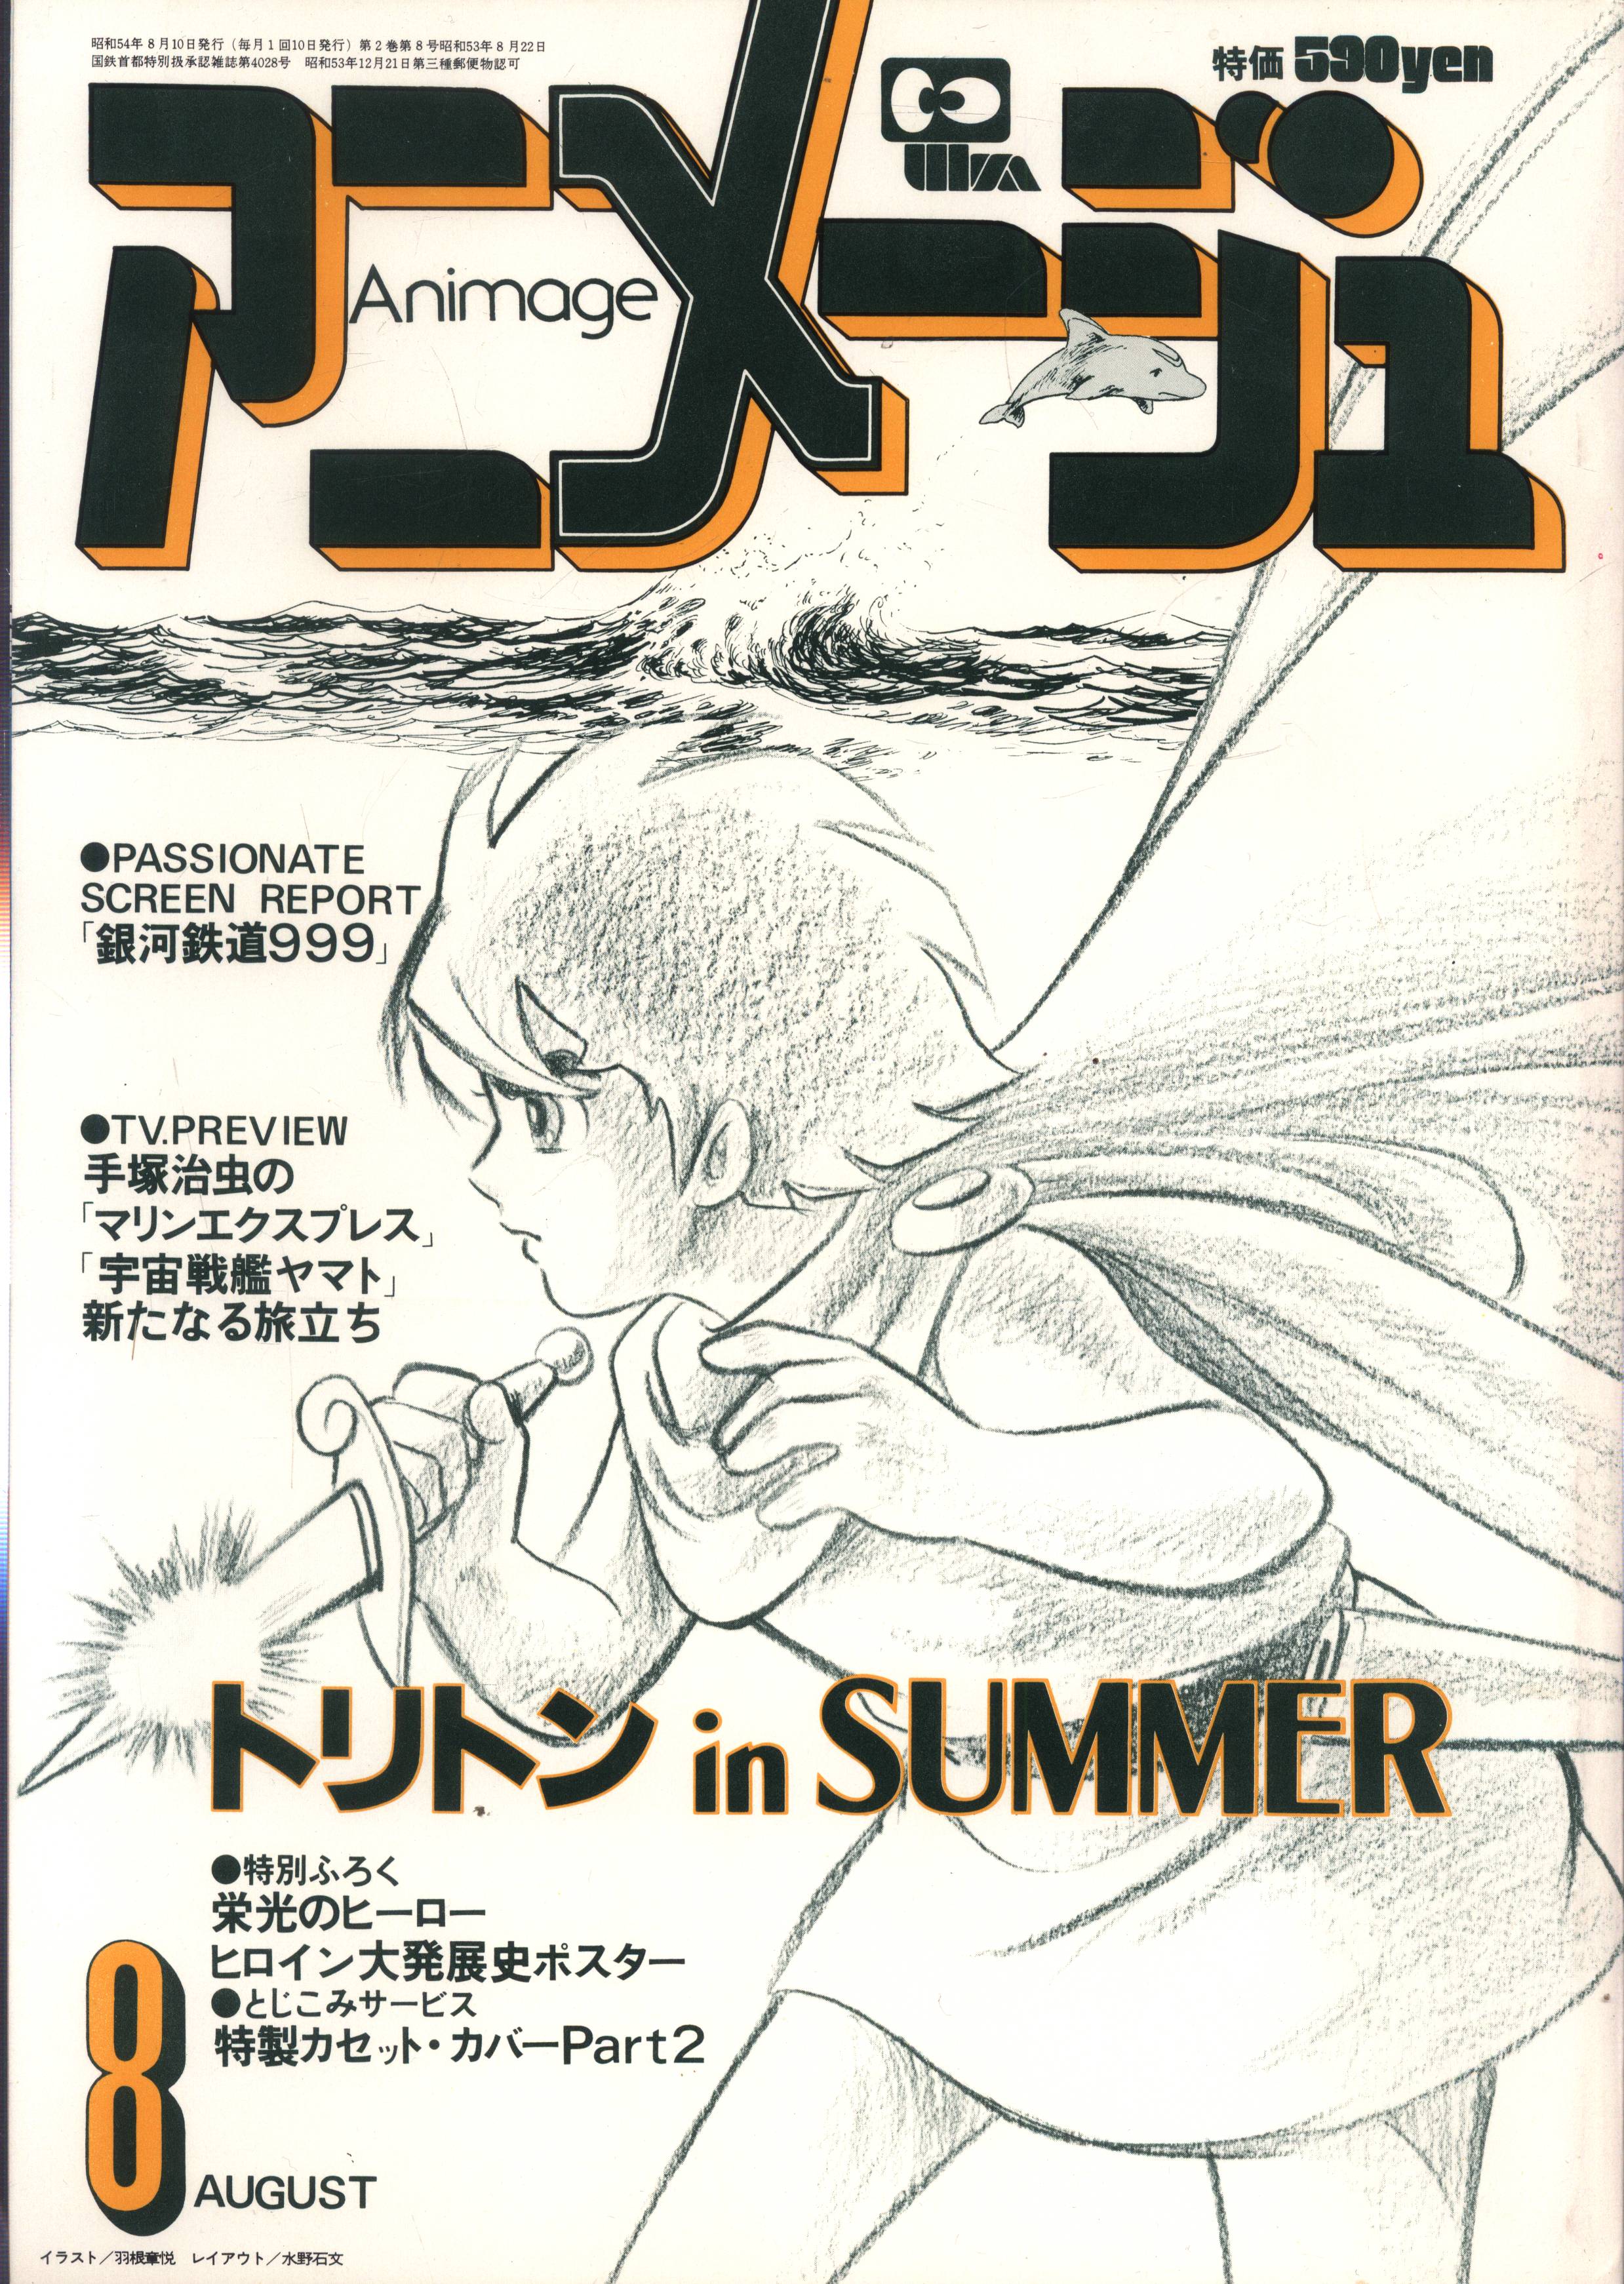 アニメージュ 1989年 12冊 セット - アート